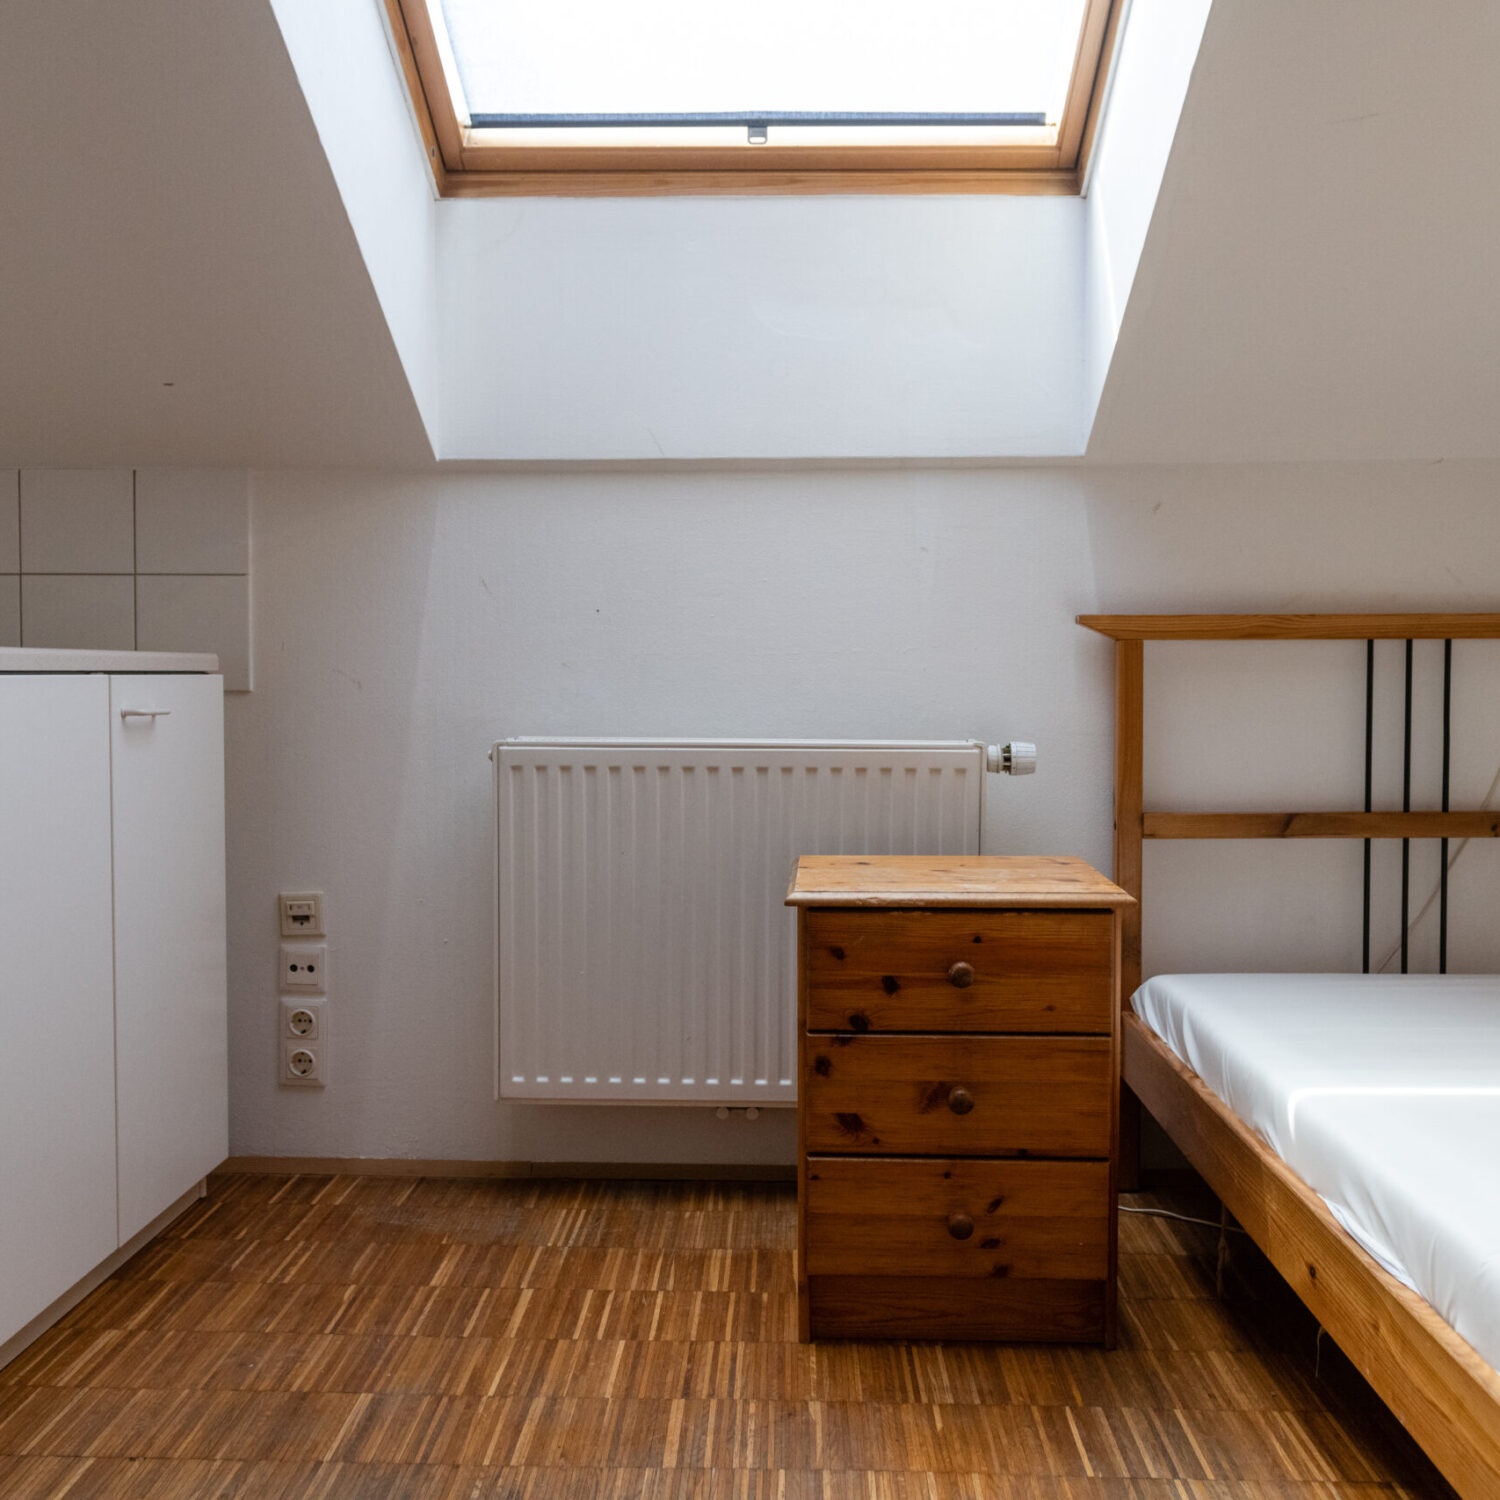 Eine leere Wohnung im neunerhaus Billrothstraße mit Bett, Kommode, Küche und Fenster